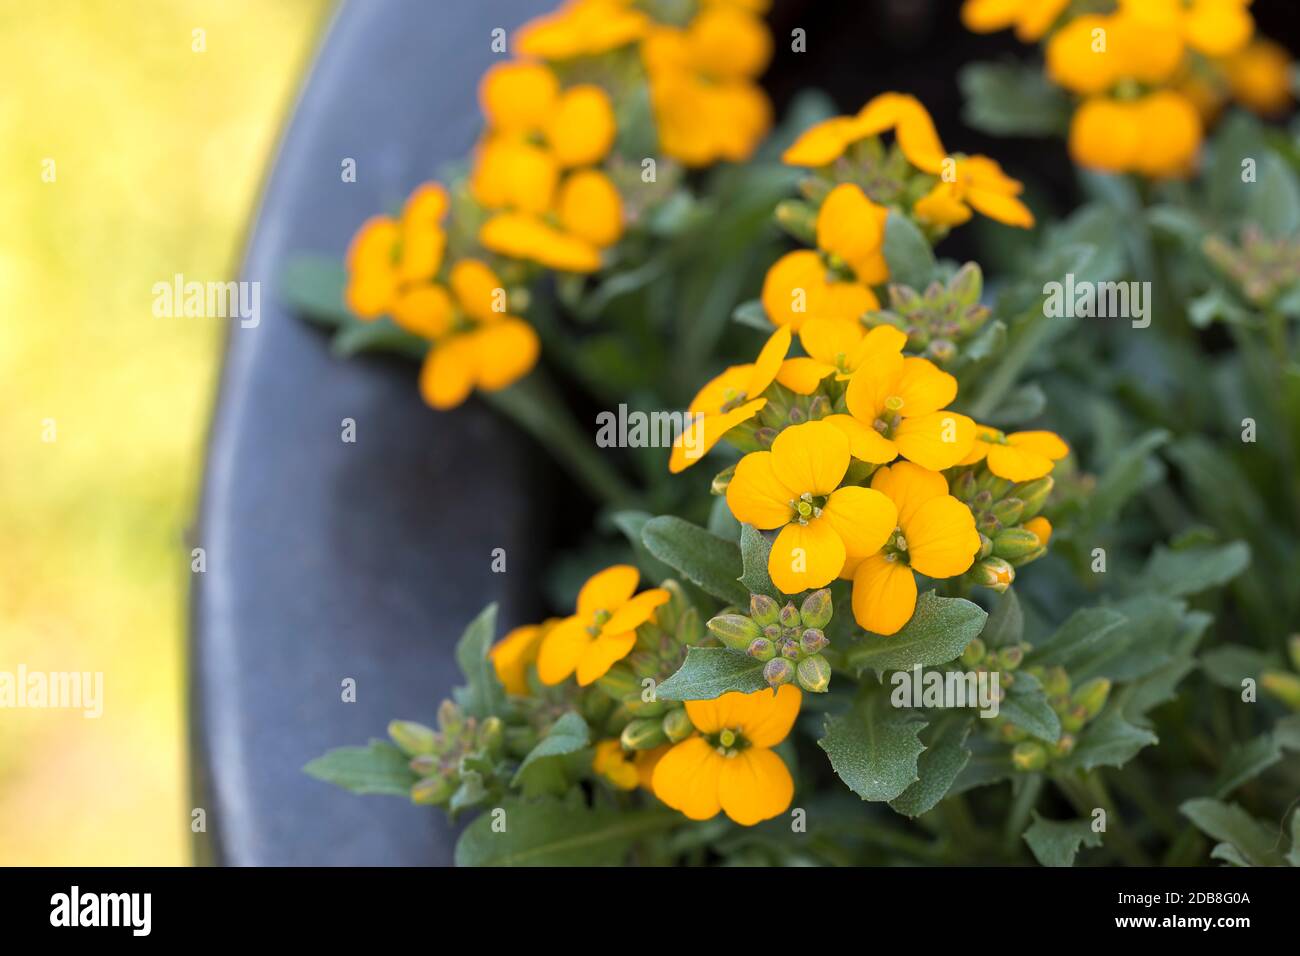 Erysimum cheiri ou wallflowers dans le jardin Banque D'Images